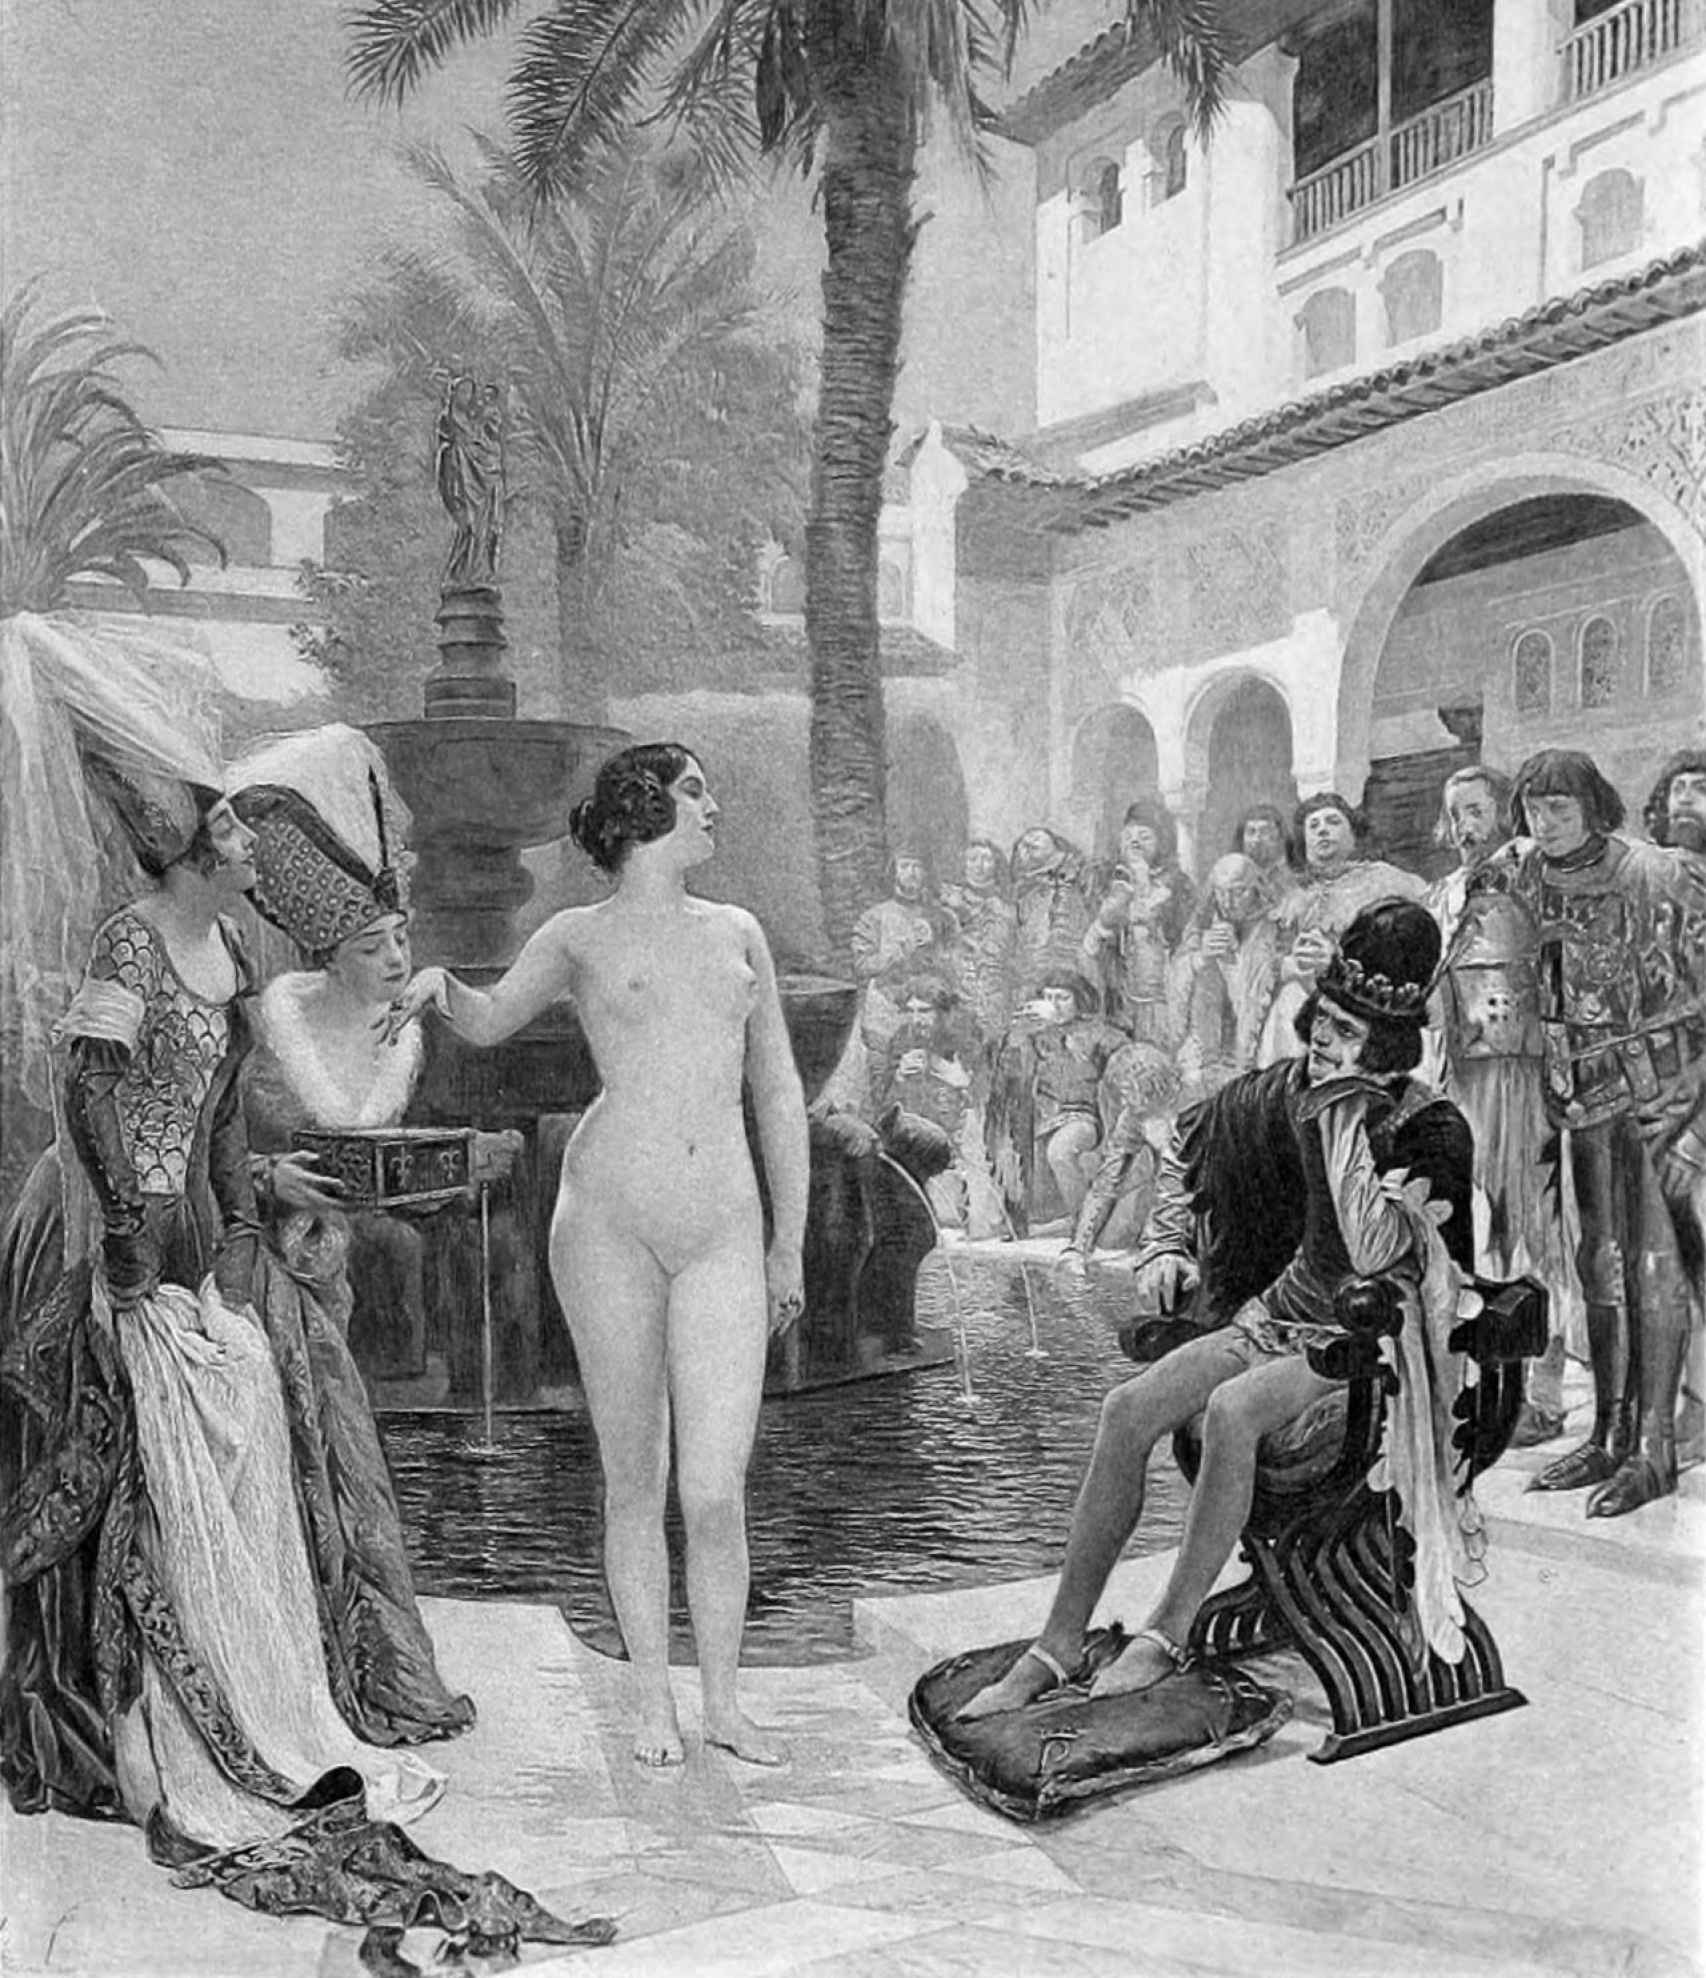 Grabado de María Padilla, desnuda en el Alcázar de Sevilla frente a Pedro I.